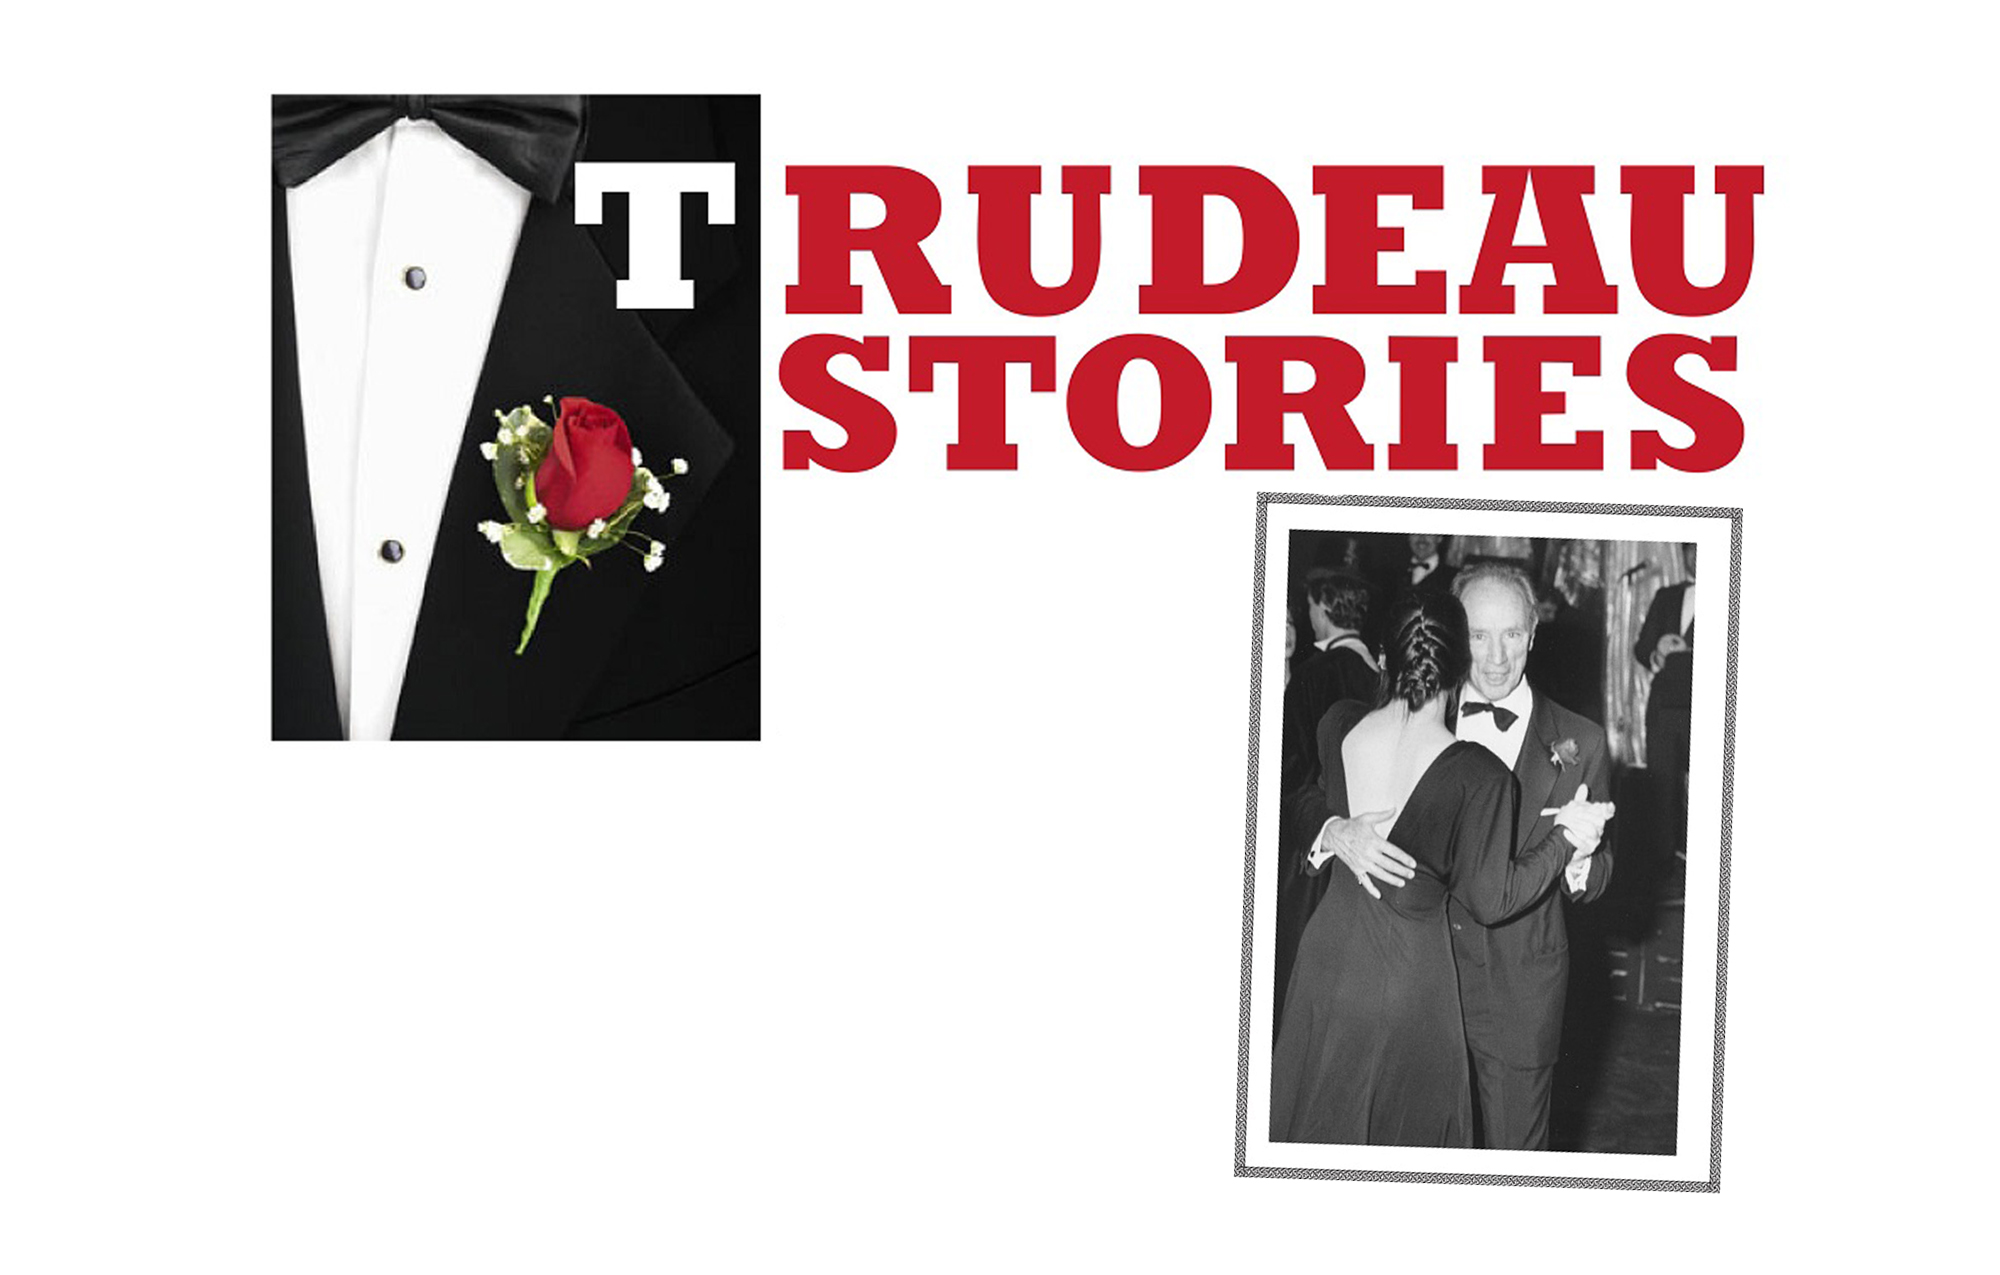 Trudeau Stories